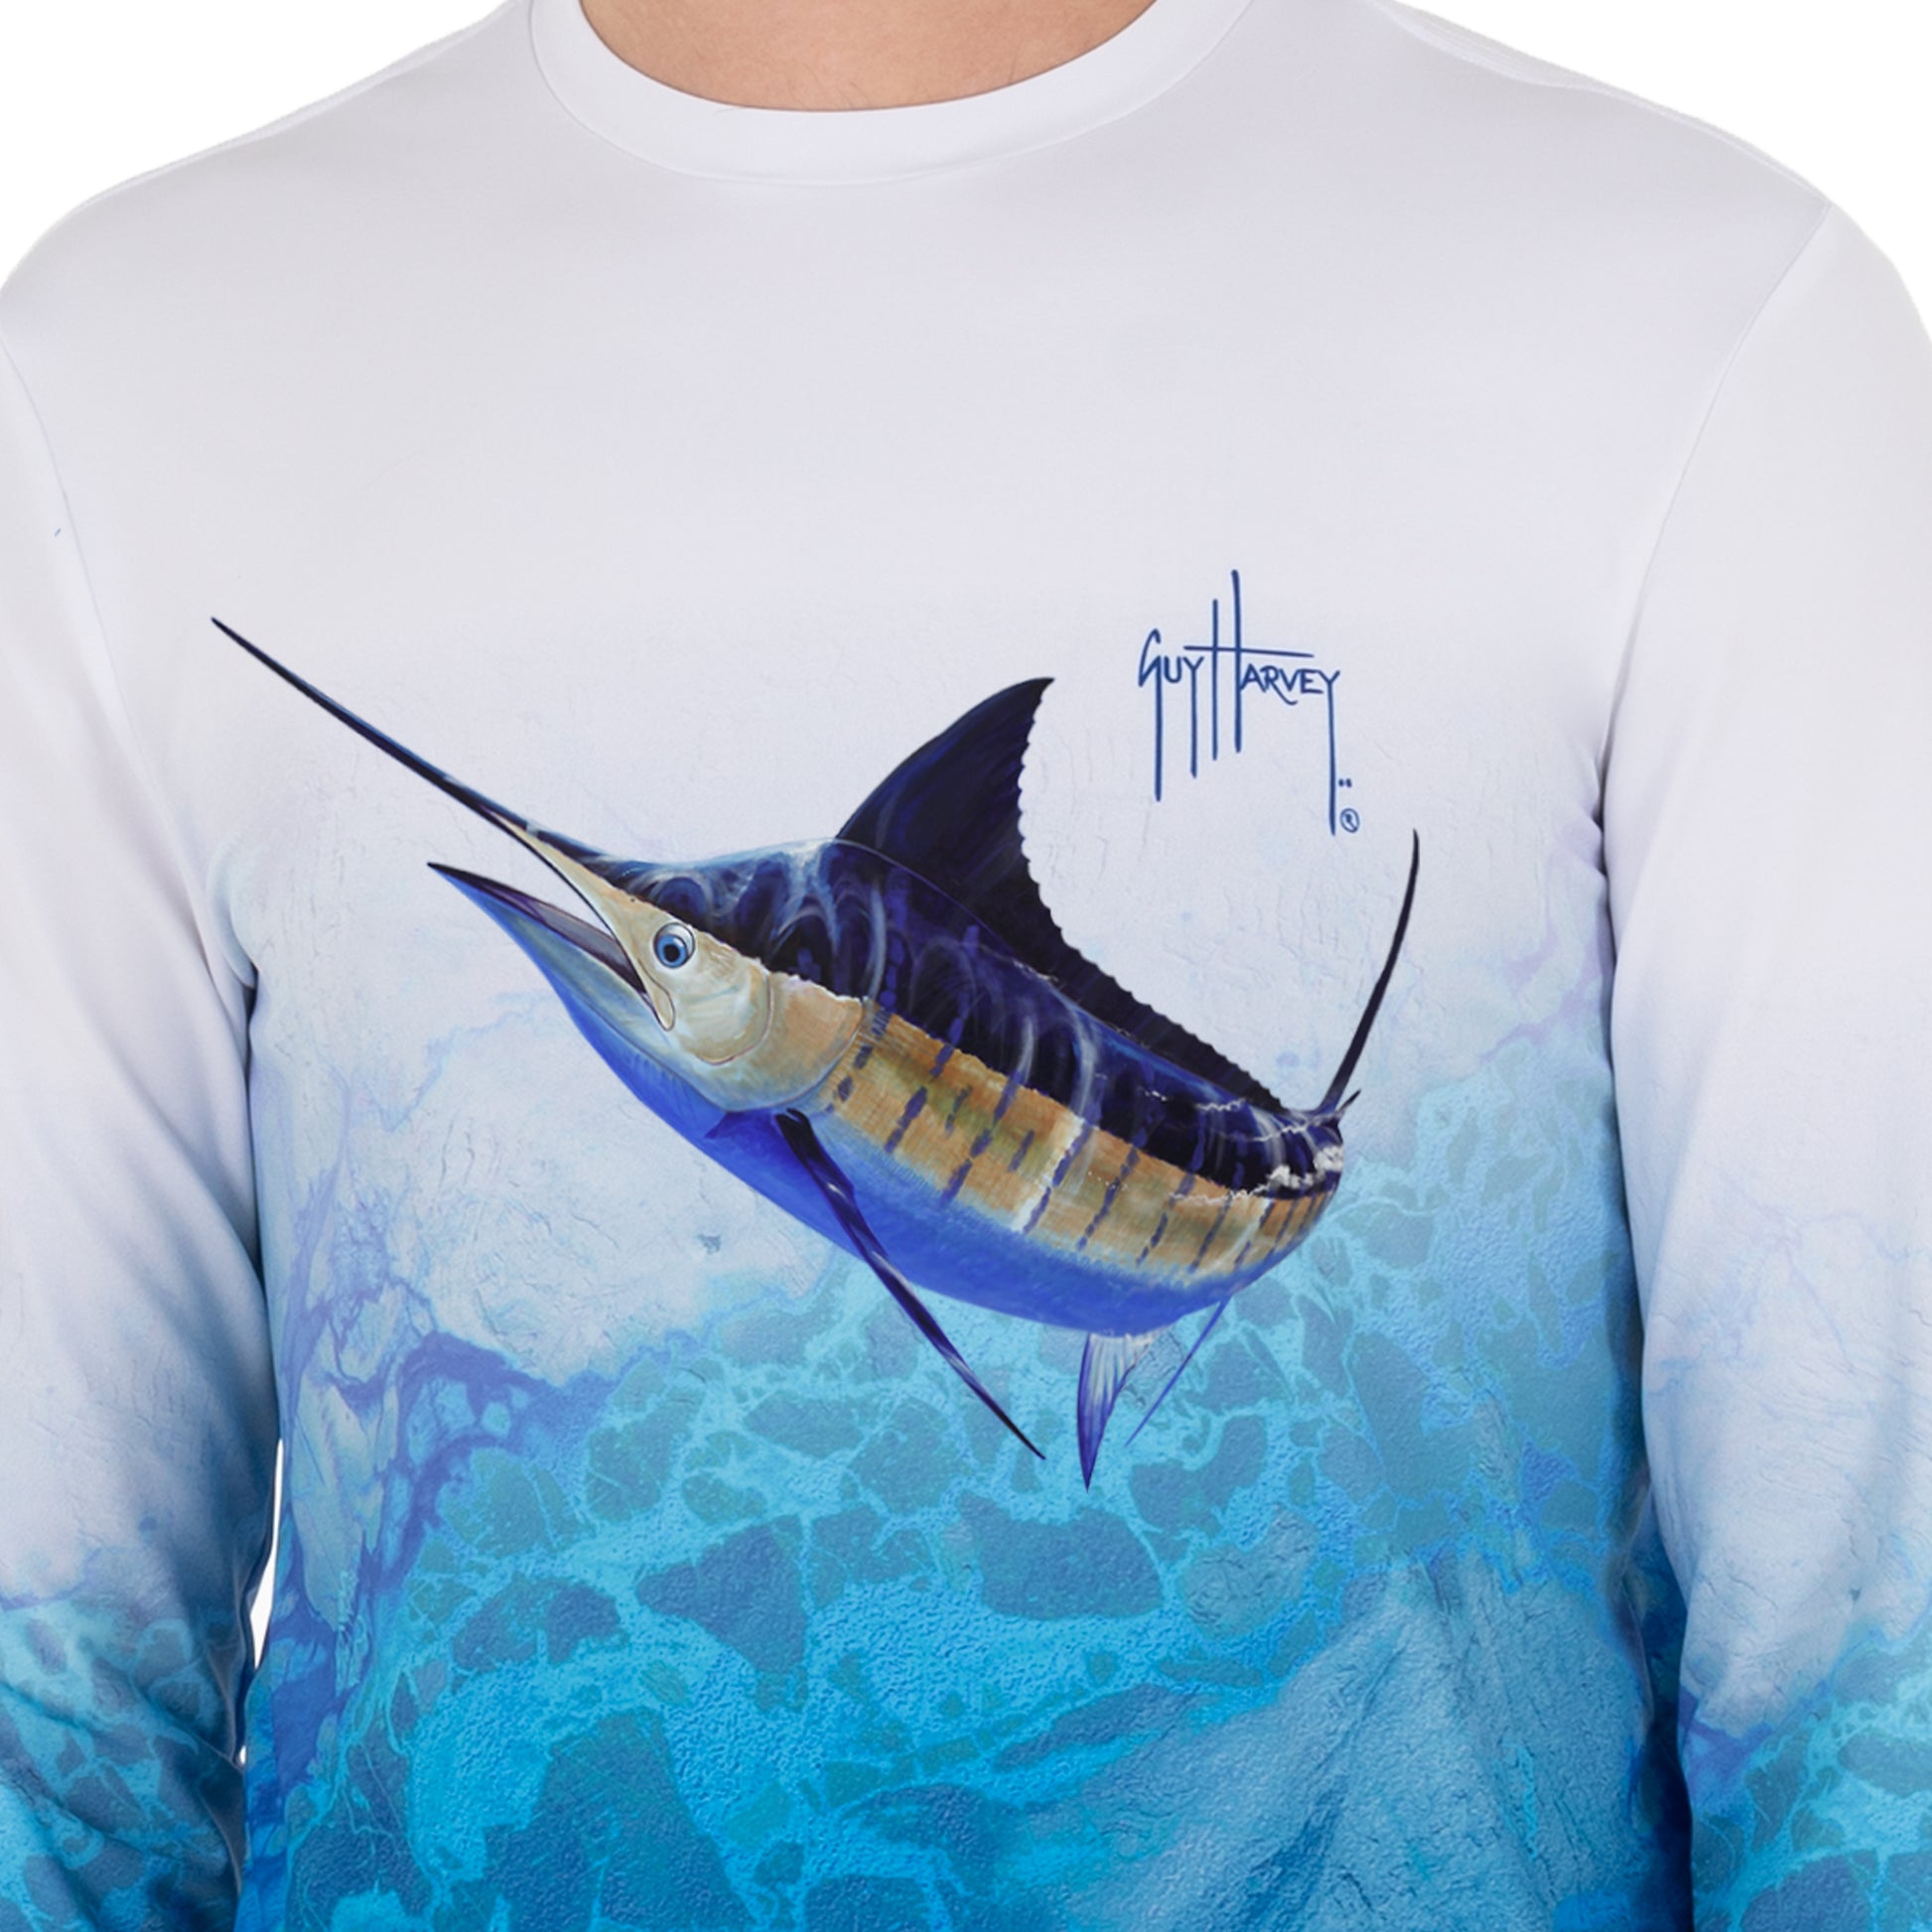 Men's Realtree Camo Marlin Light Sun Protection Long Sleeve Shirt – Guy  Harvey